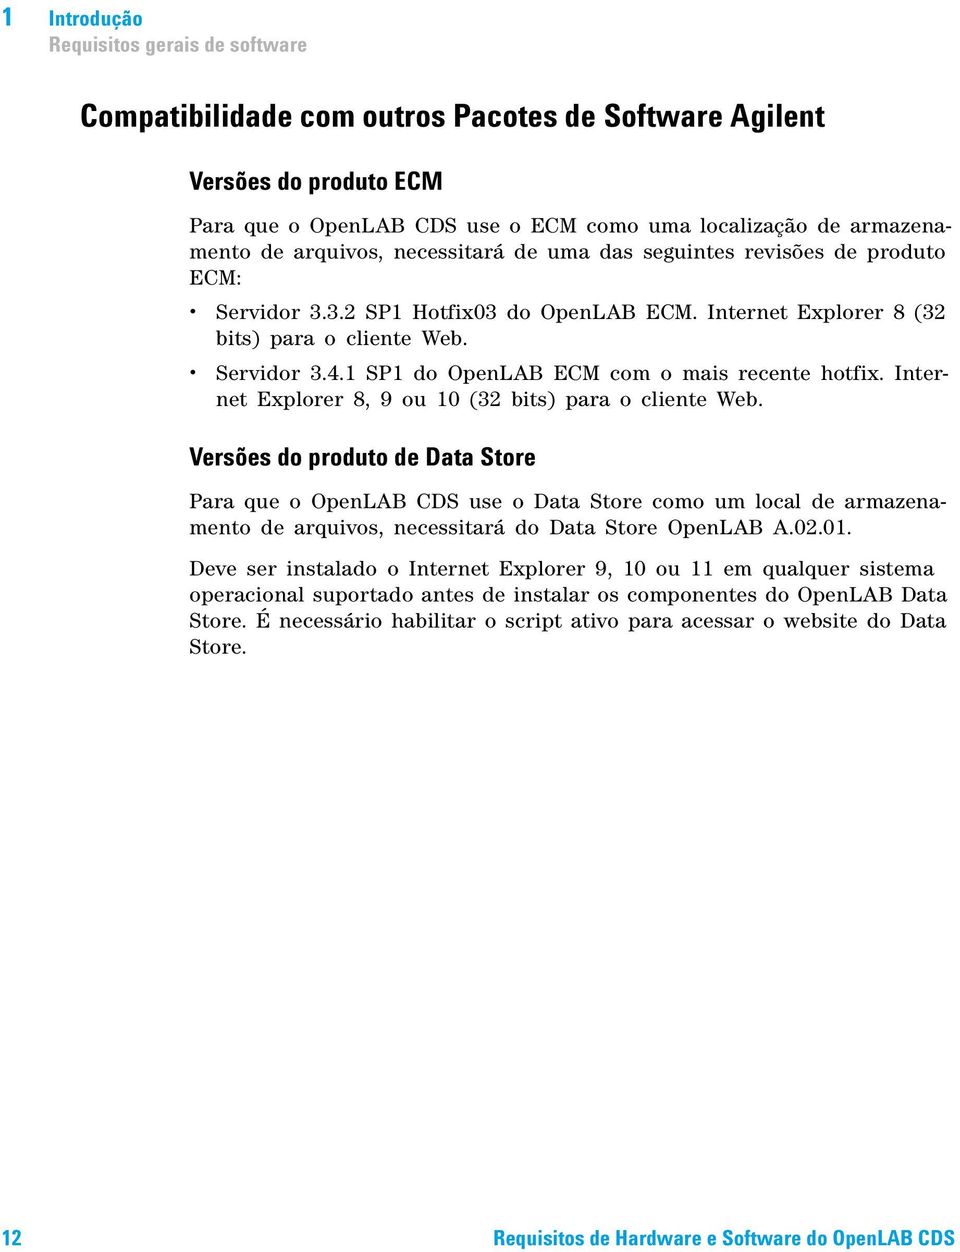 1 SP1 do OpenLAB ECM com o mais recente hotfix. Internet Explorer 8, 9 ou 10 (32 bits) para o cliente Web.